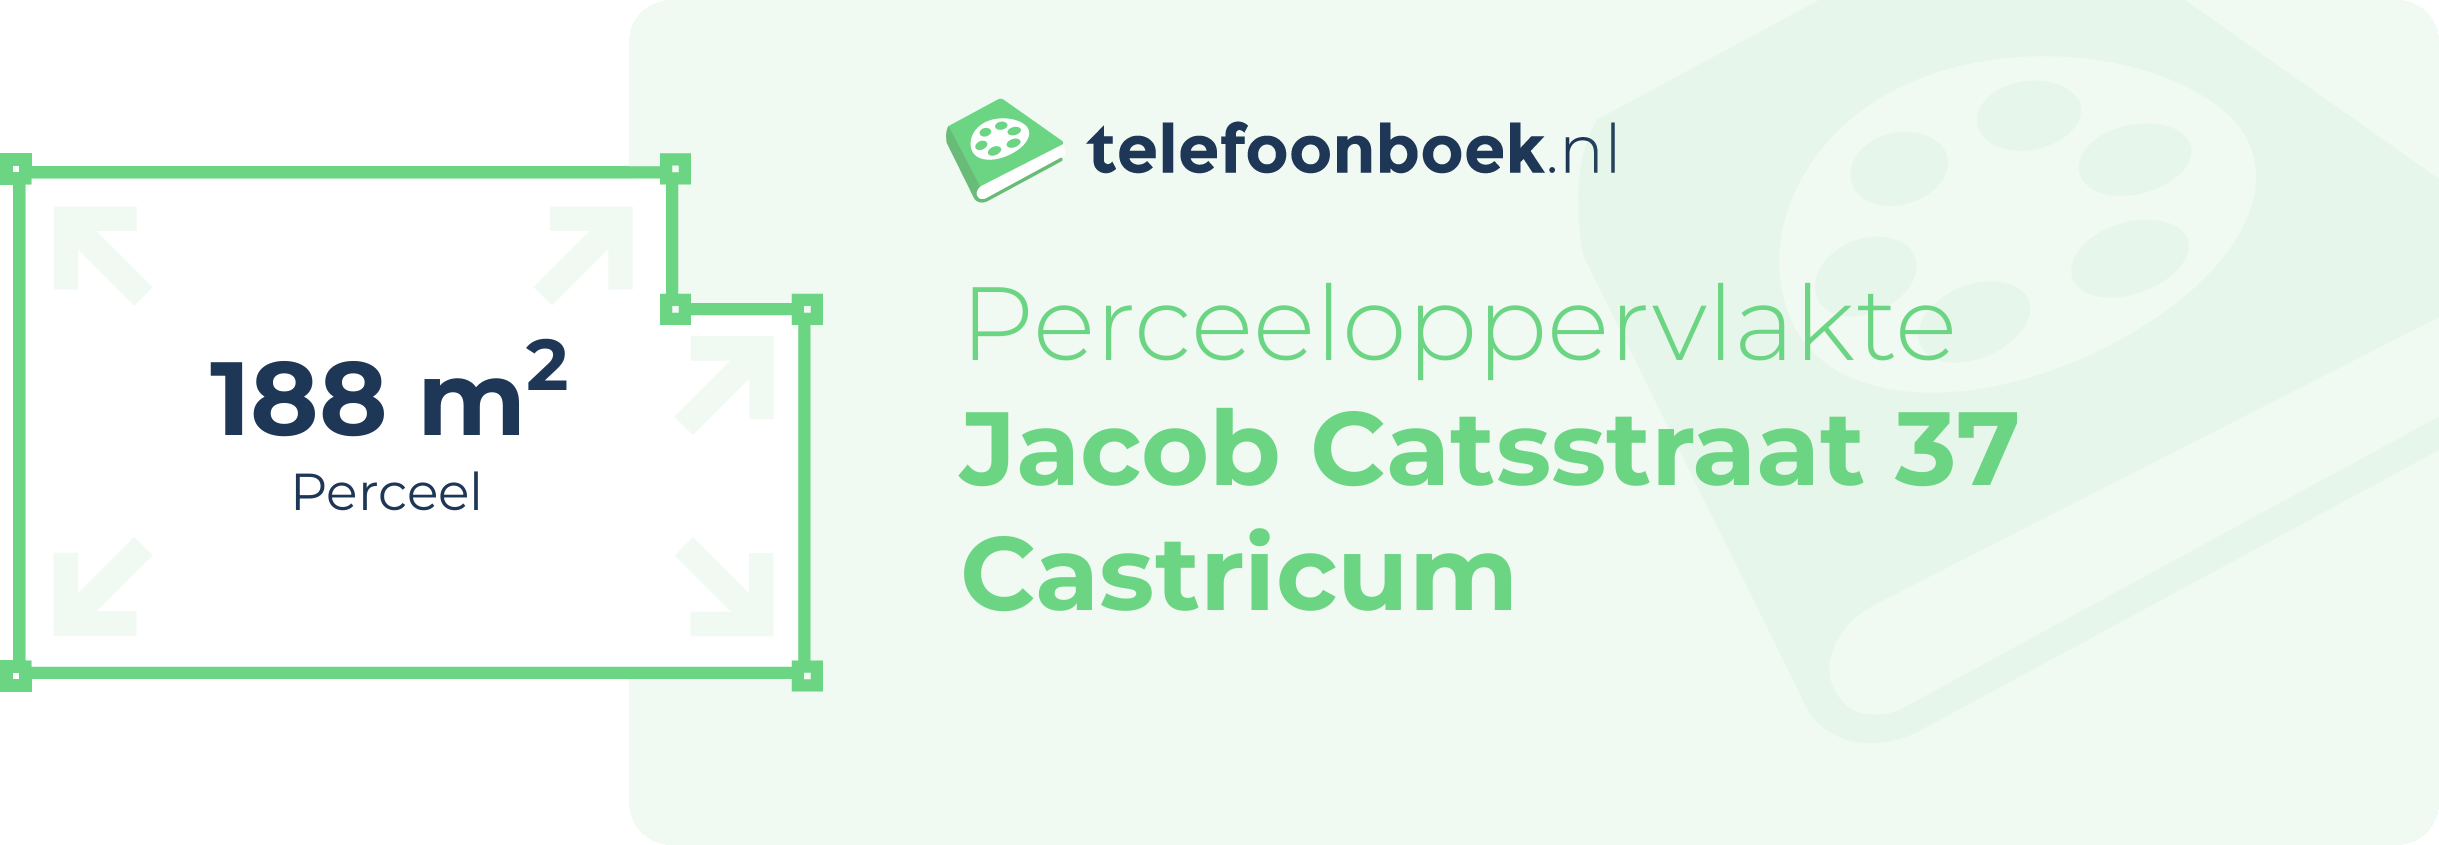 Perceeloppervlakte Jacob Catsstraat 37 Castricum